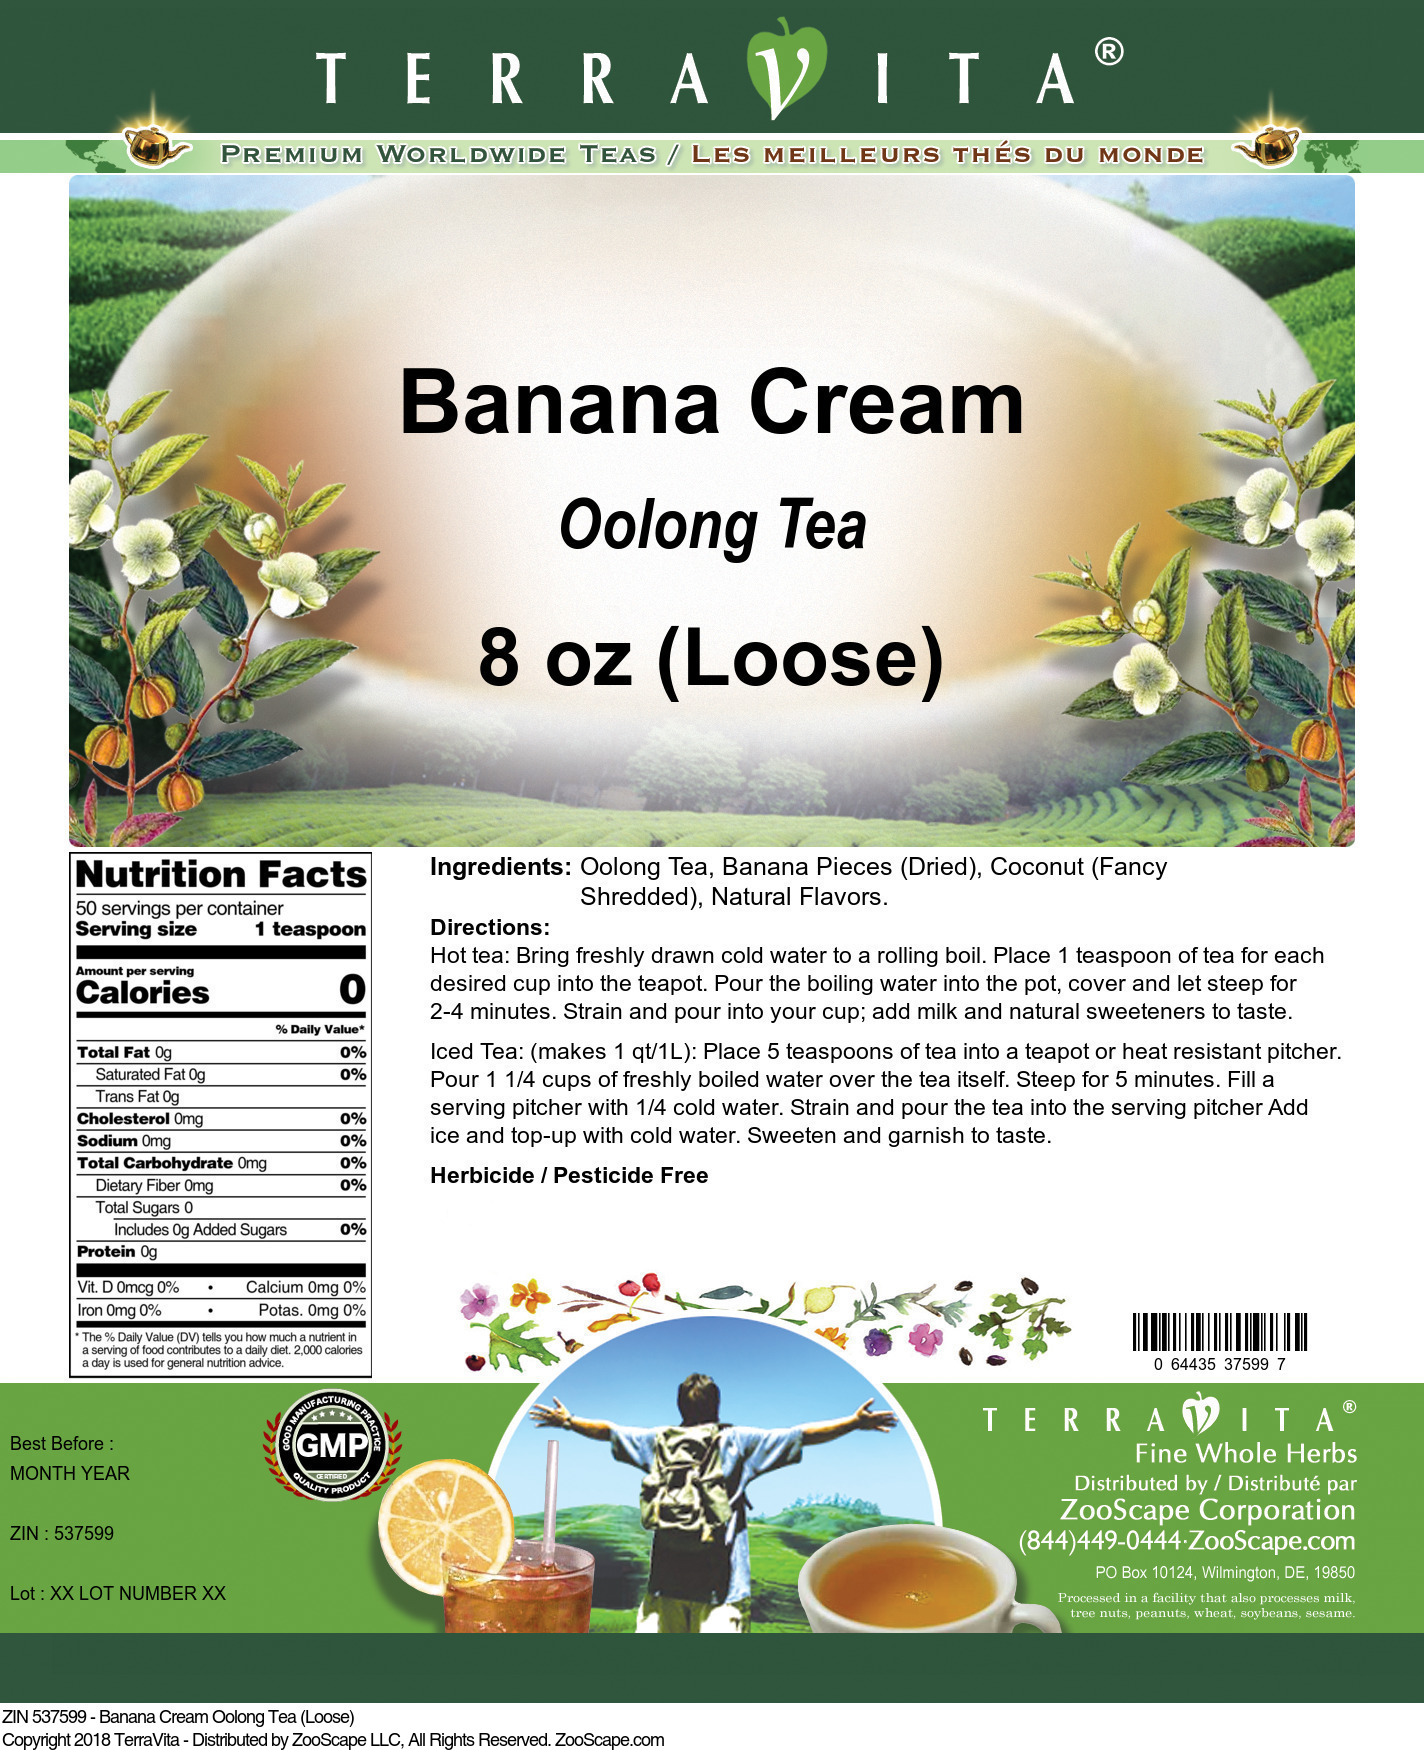 Banana Cream Oolong Tea (Loose) - Label